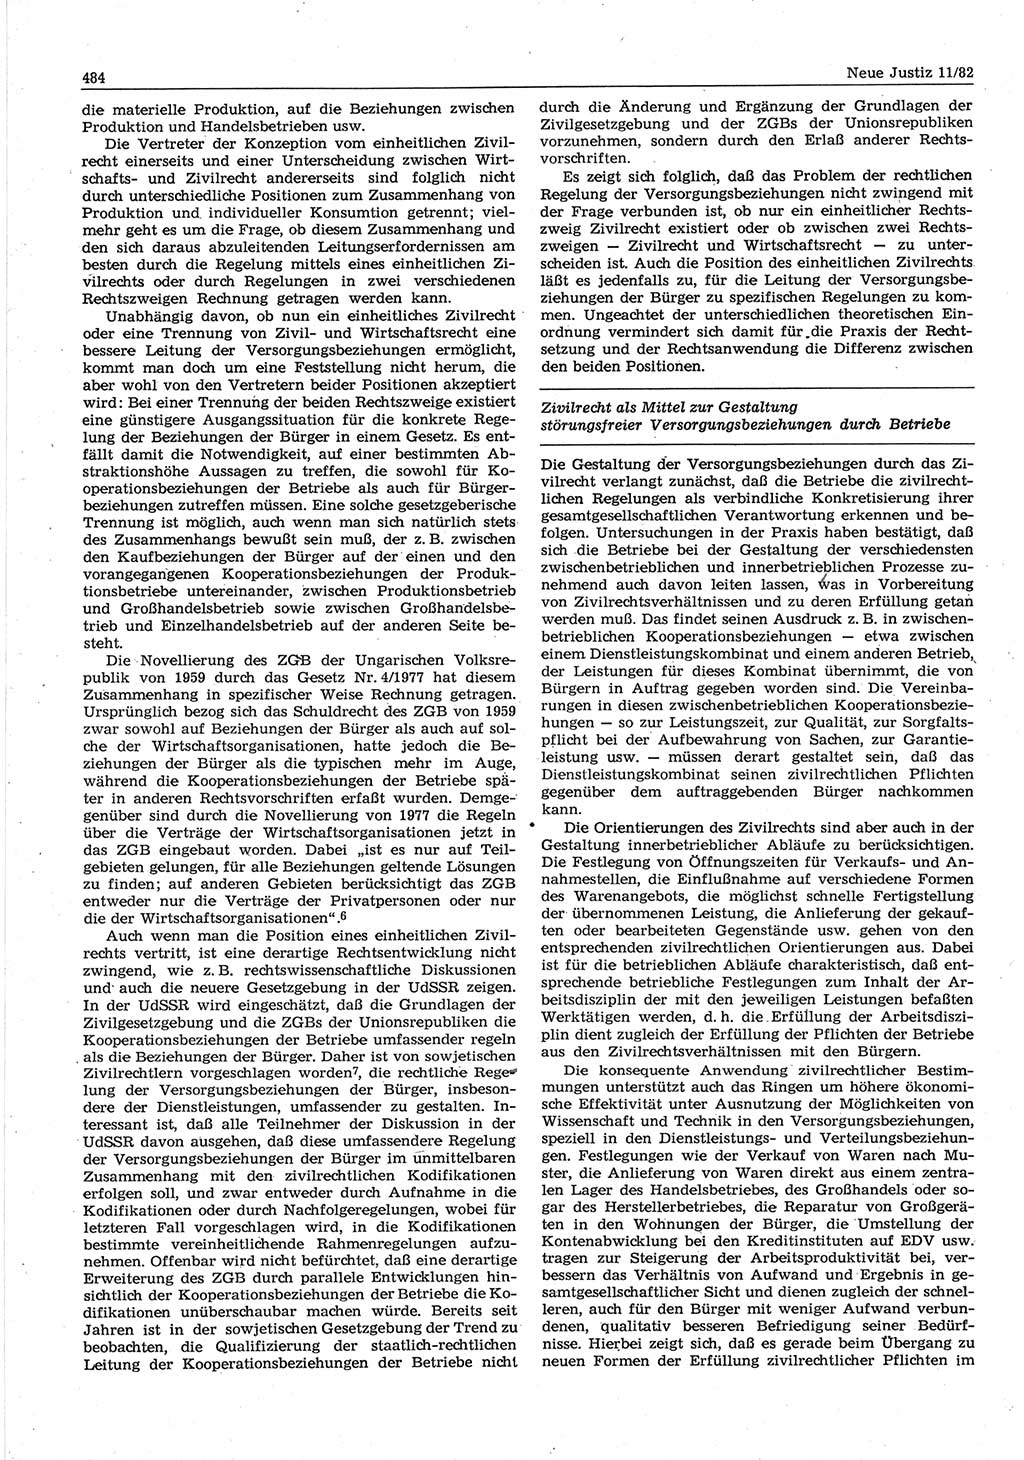 Neue Justiz (NJ), Zeitschrift für sozialistisches Recht und Gesetzlichkeit [Deutsche Demokratische Republik (DDR)], 36. Jahrgang 1982, Seite 484 (NJ DDR 1982, S. 484)